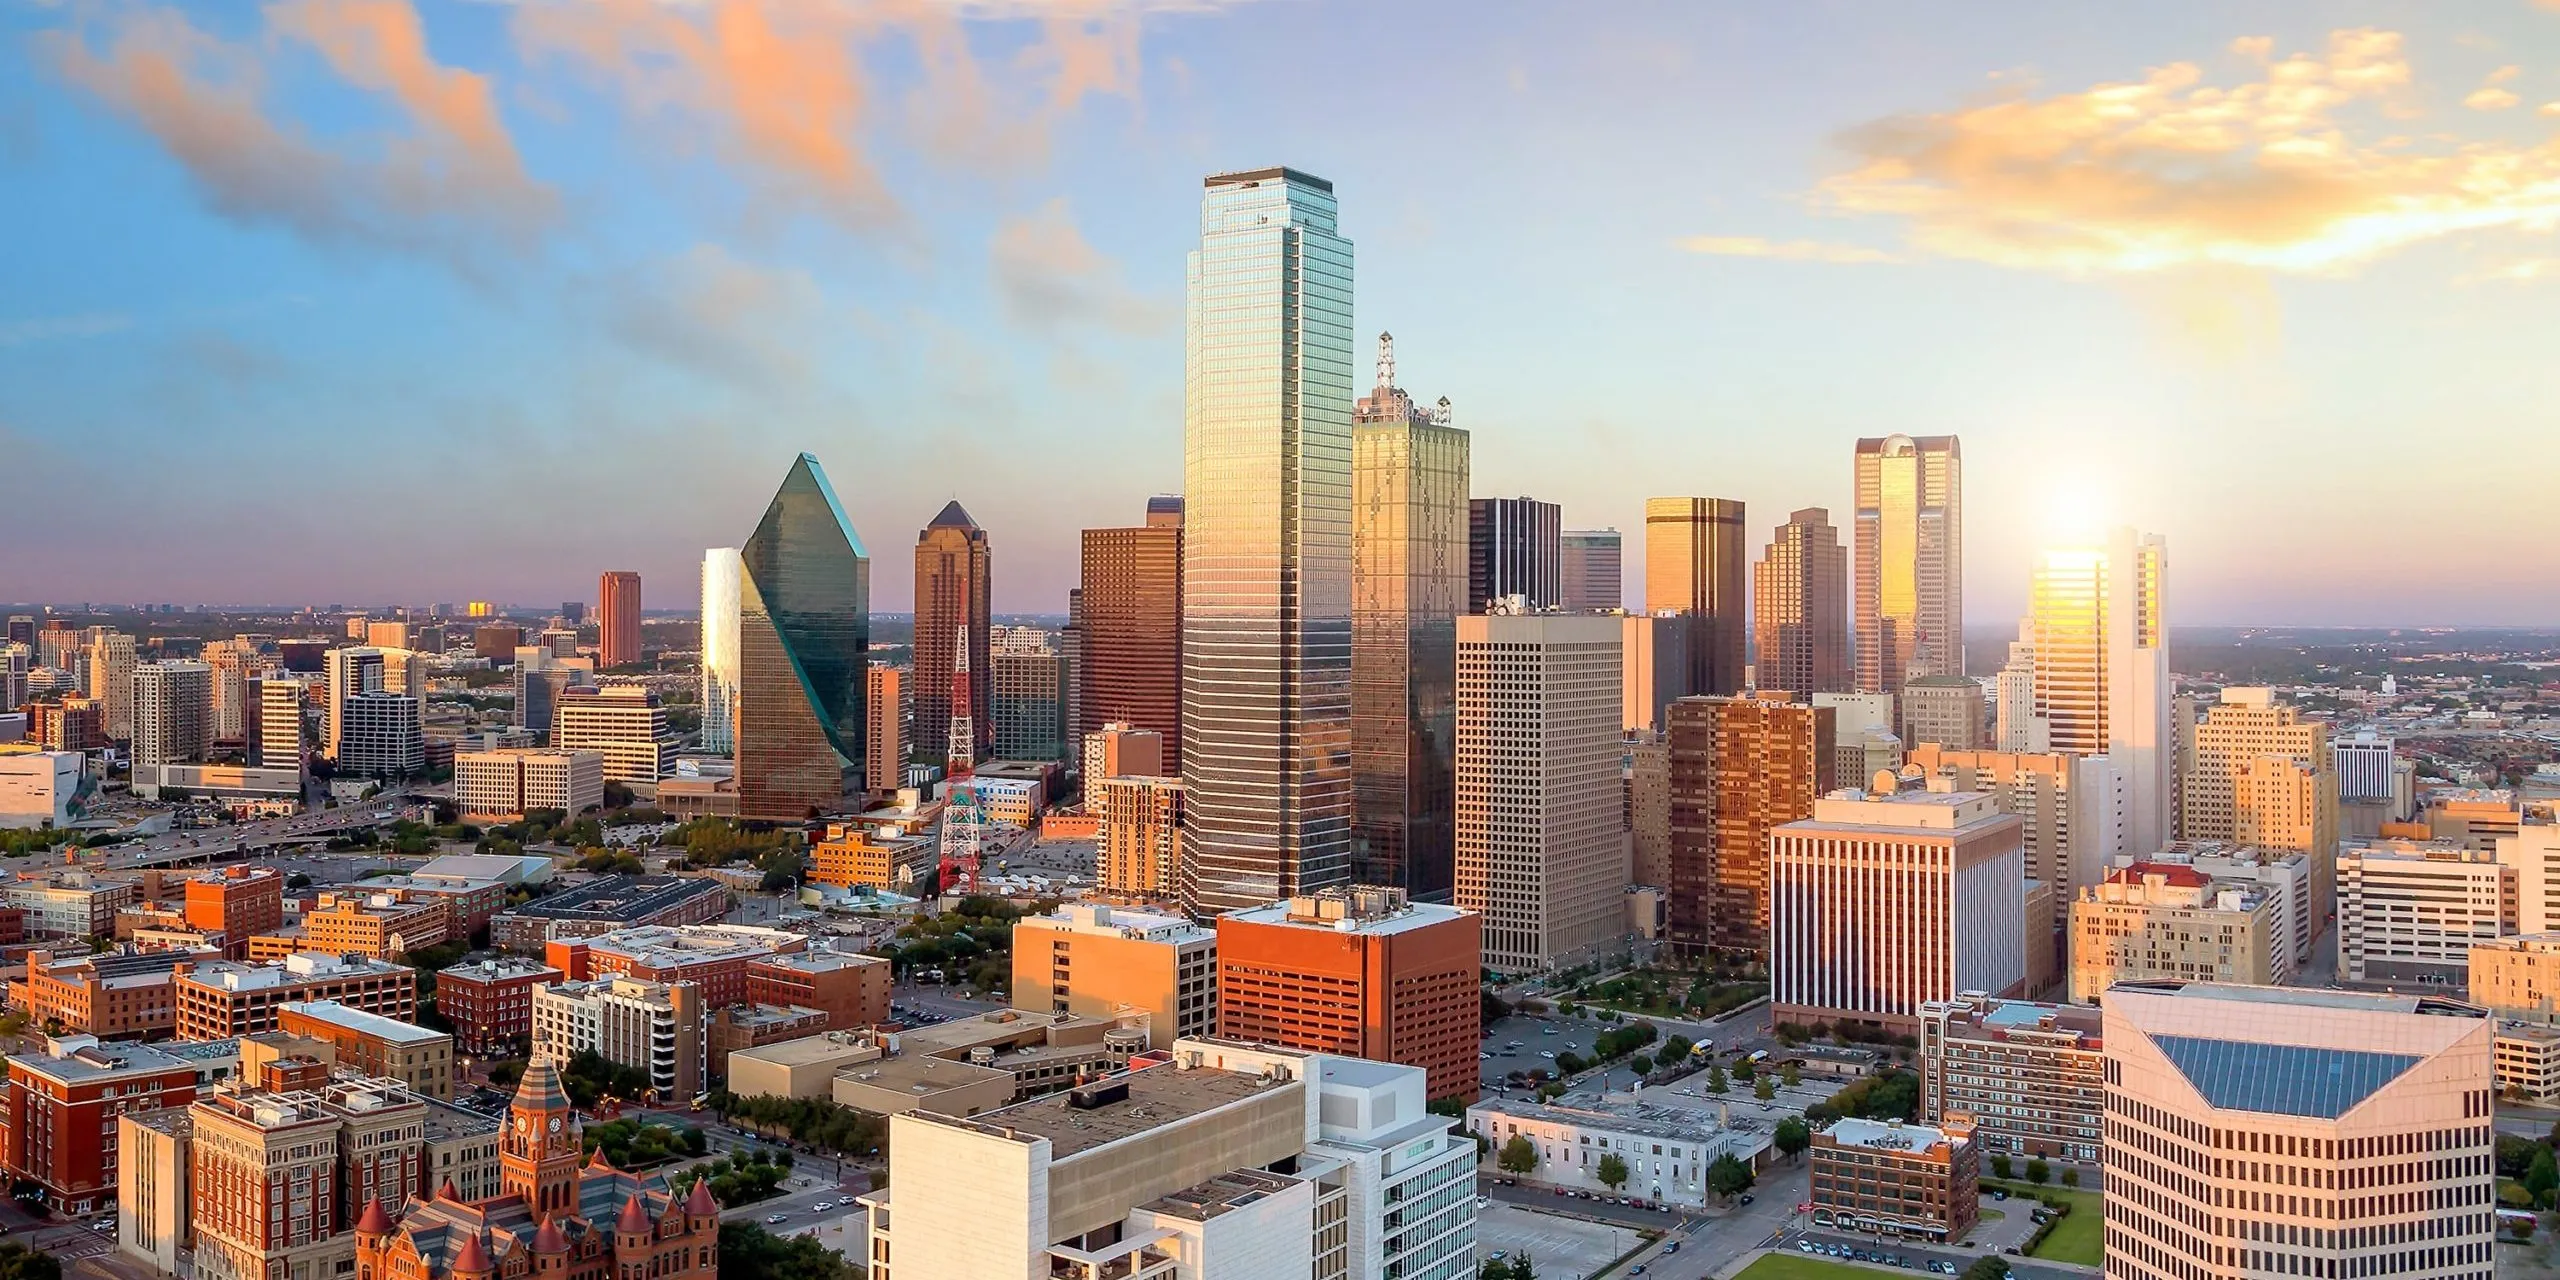 Tech Companies in Dallas: The Growing Dallas Tech Scene